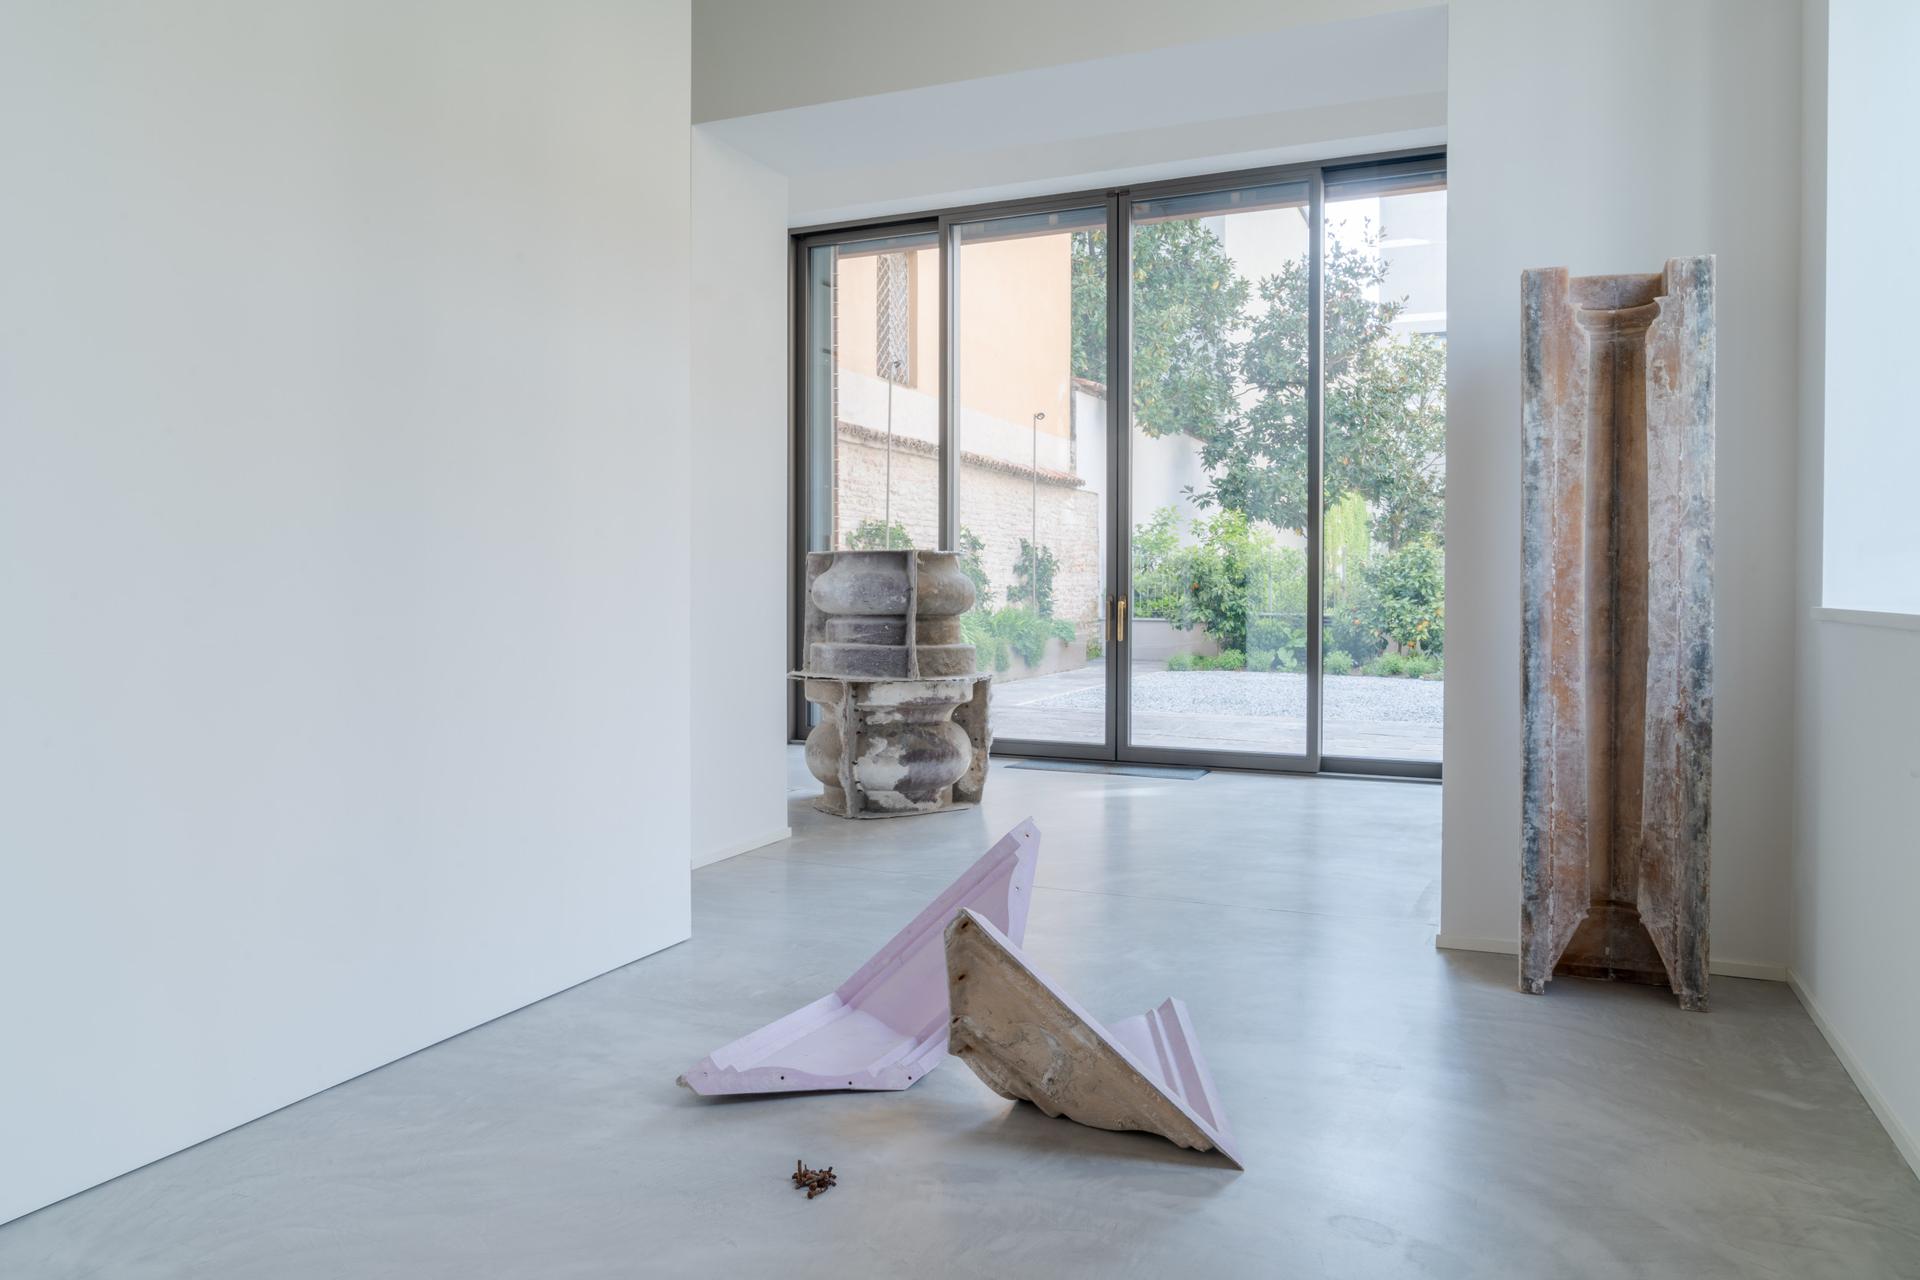 Installation view, Un Palazzo in esilio, Fondazione Elpis, Ph Fabrizio Vatieri